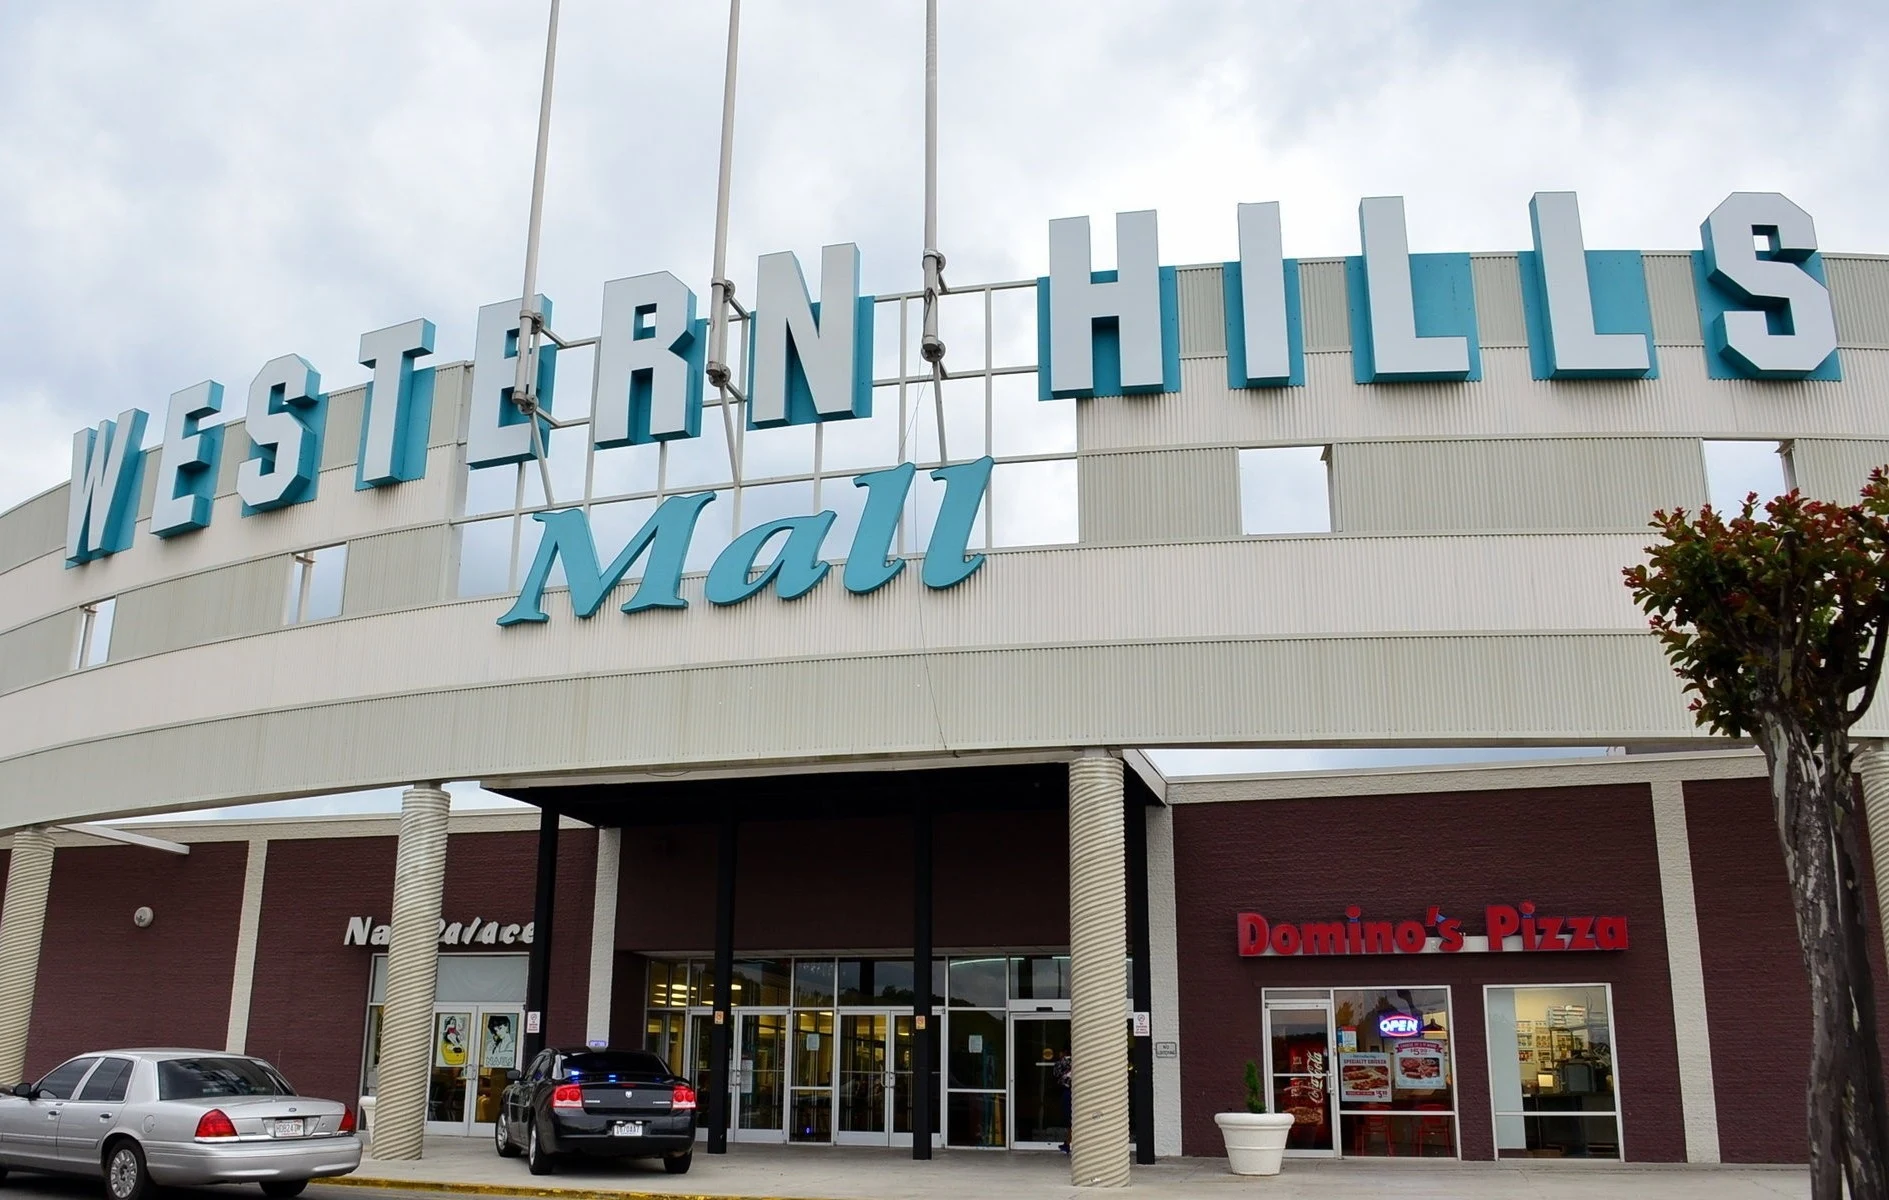 Western Hills Mall Birmingham Alabama